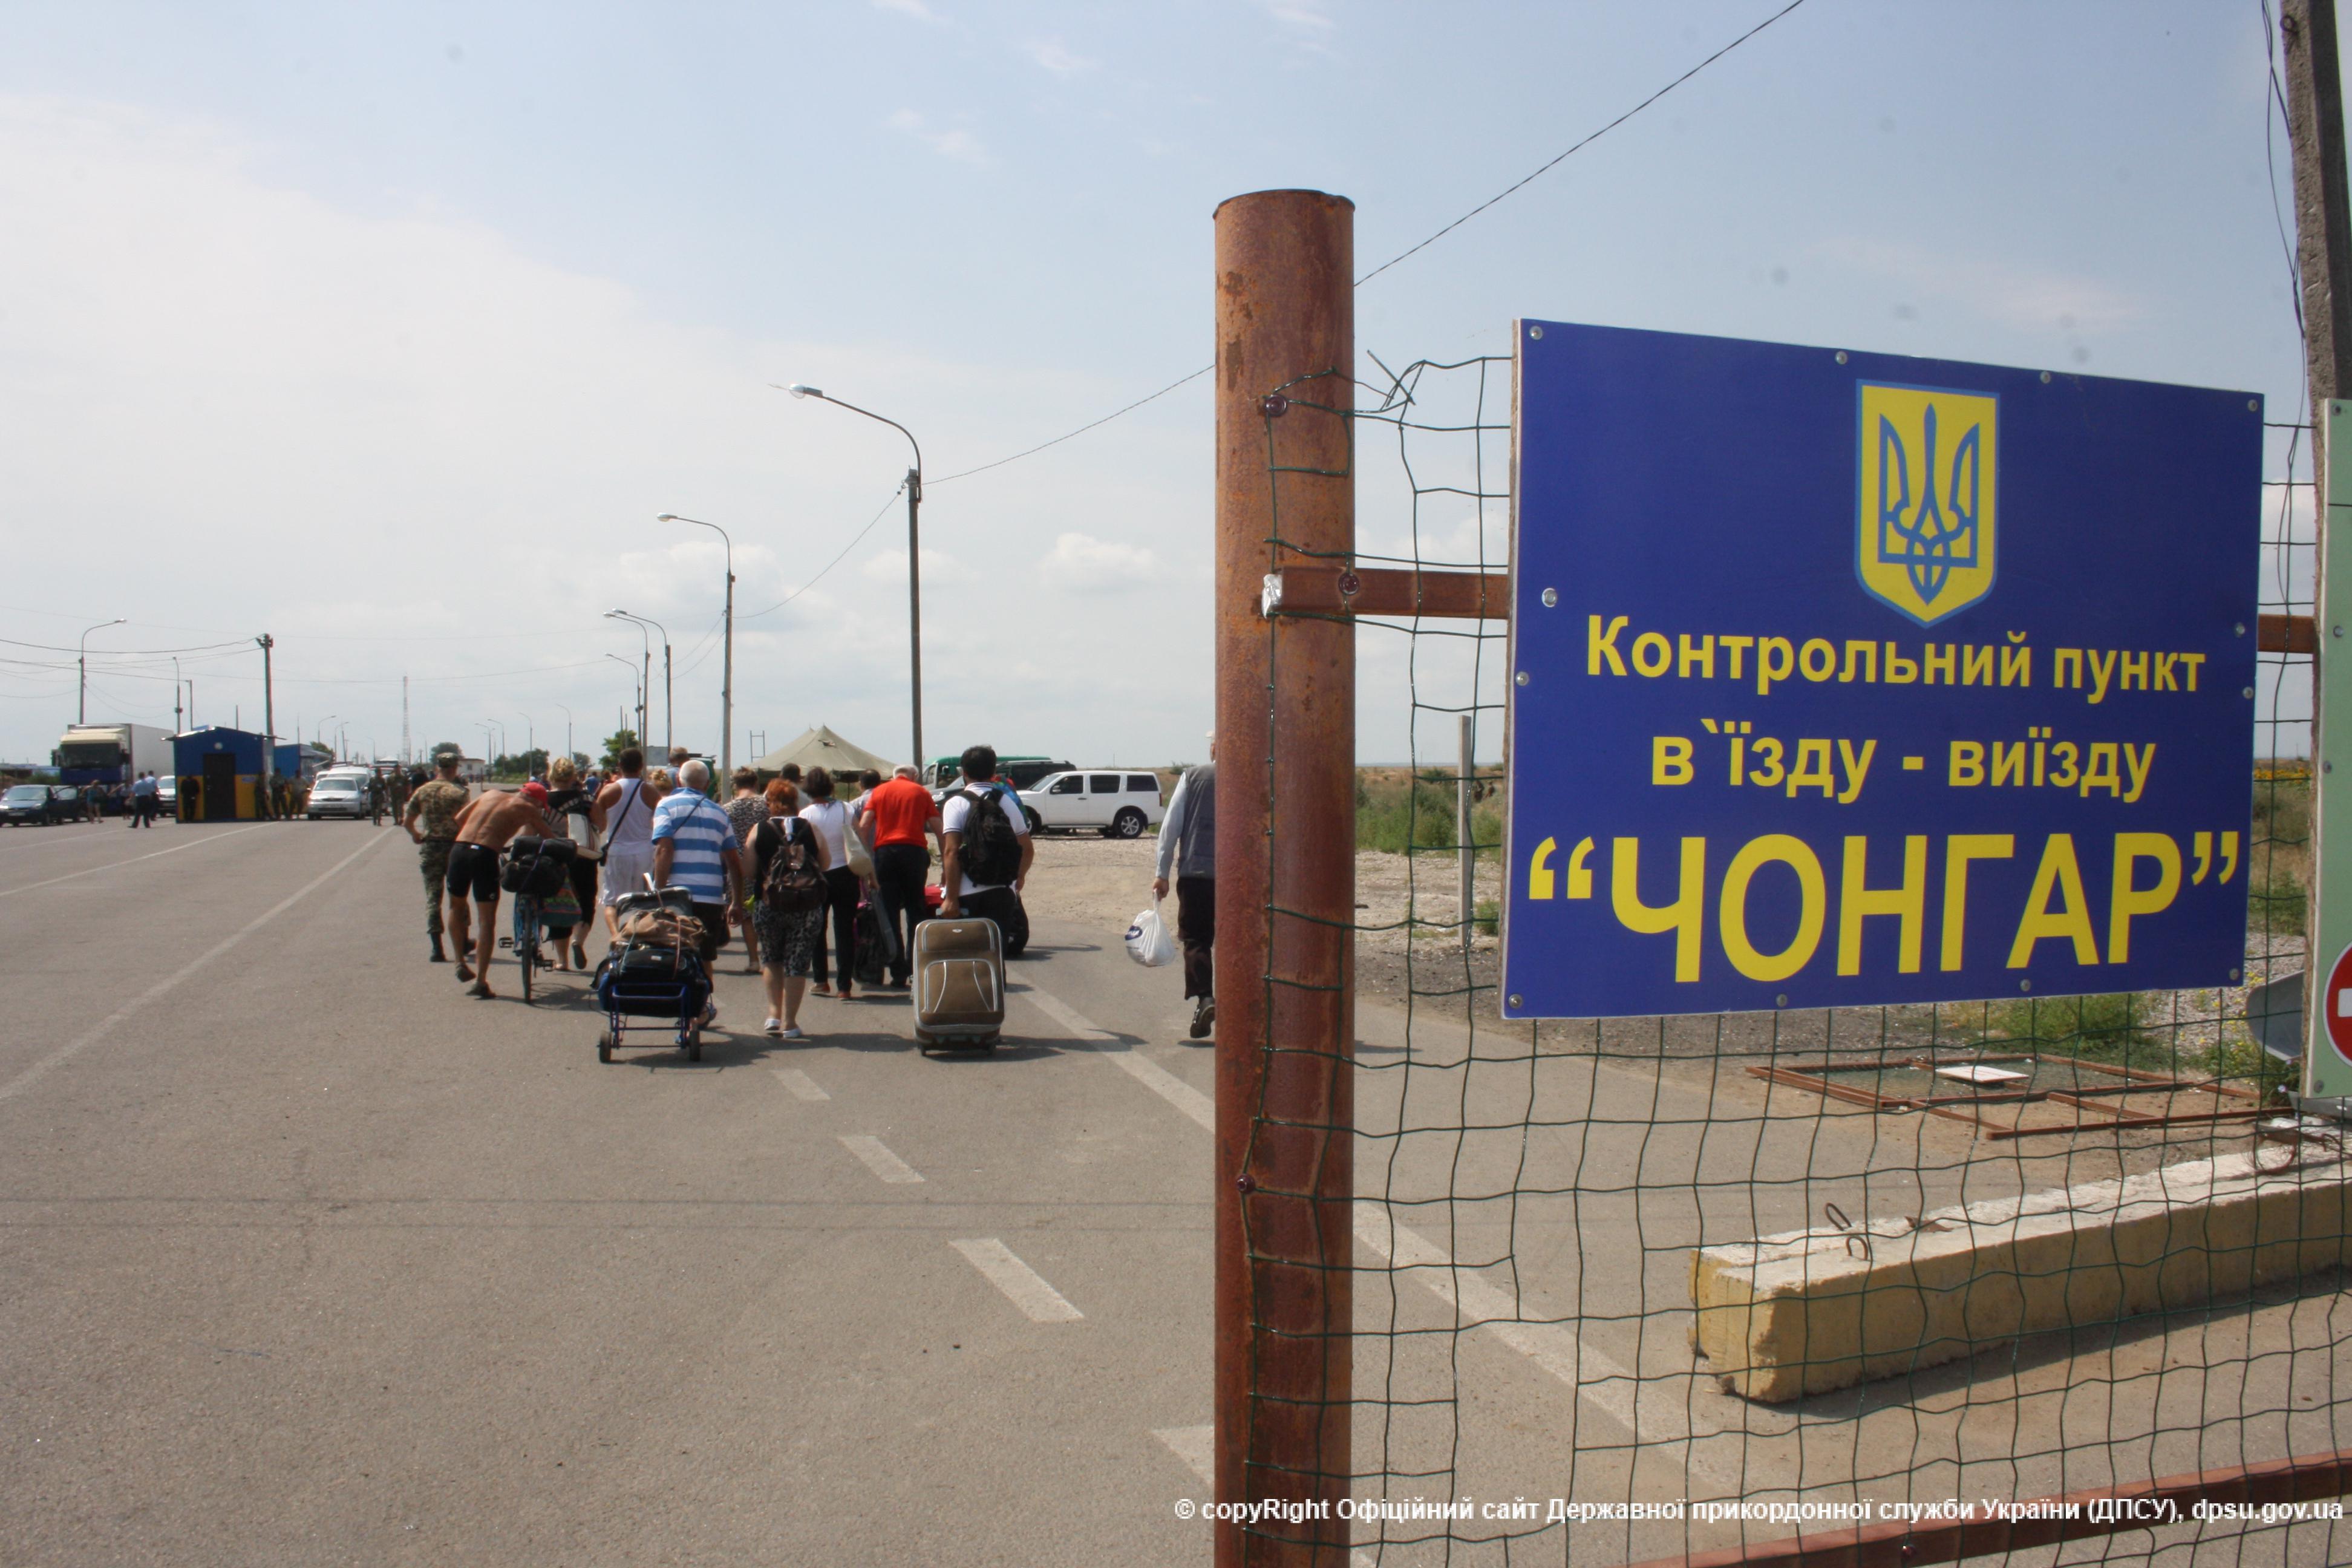 Правозащитники в суде оспорят порядок въезда в Крым